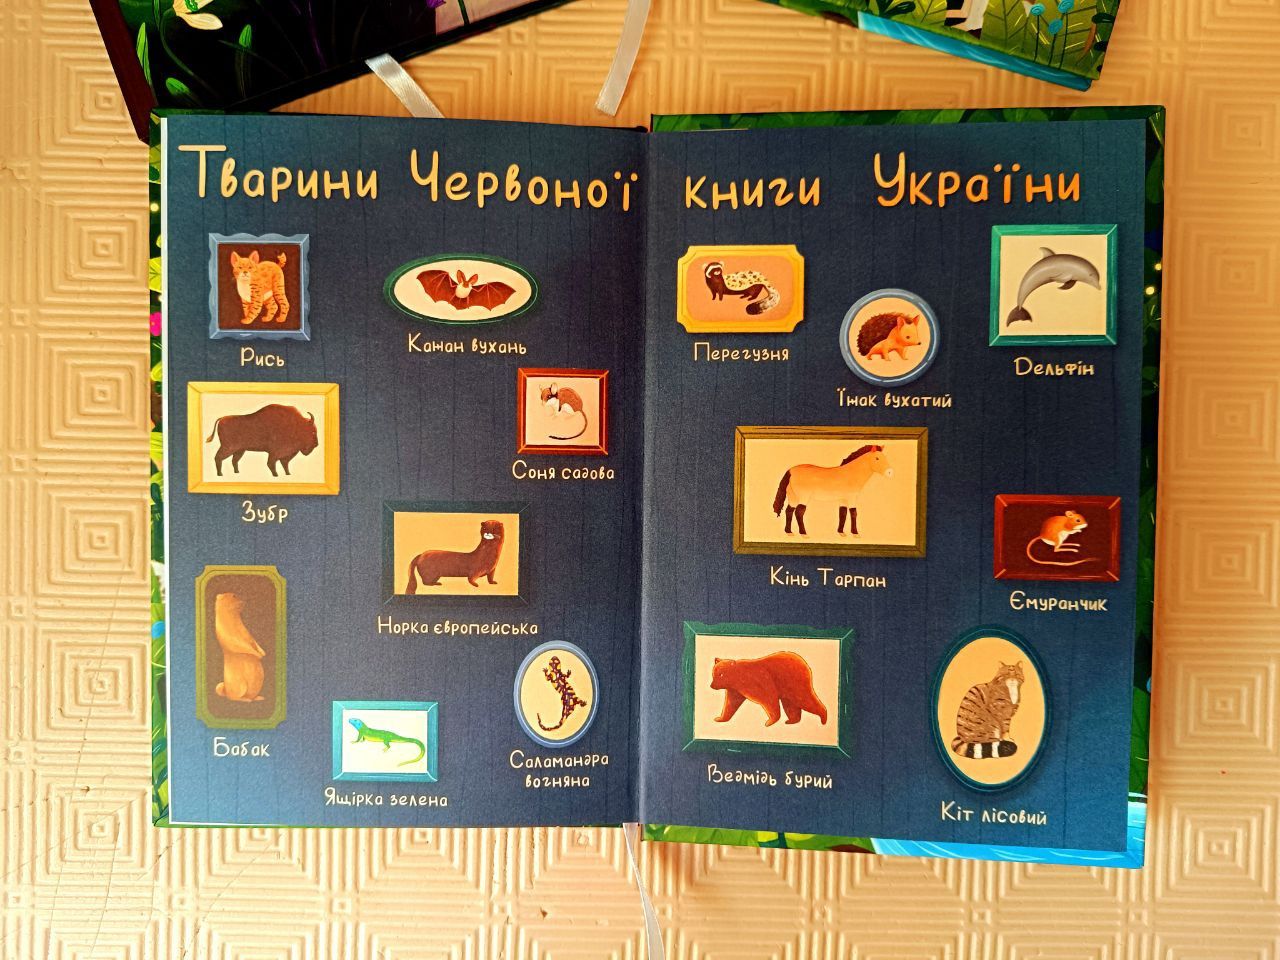 Комплект дитячих книг "Чароцвіт" і" Чаросвіт". Казки